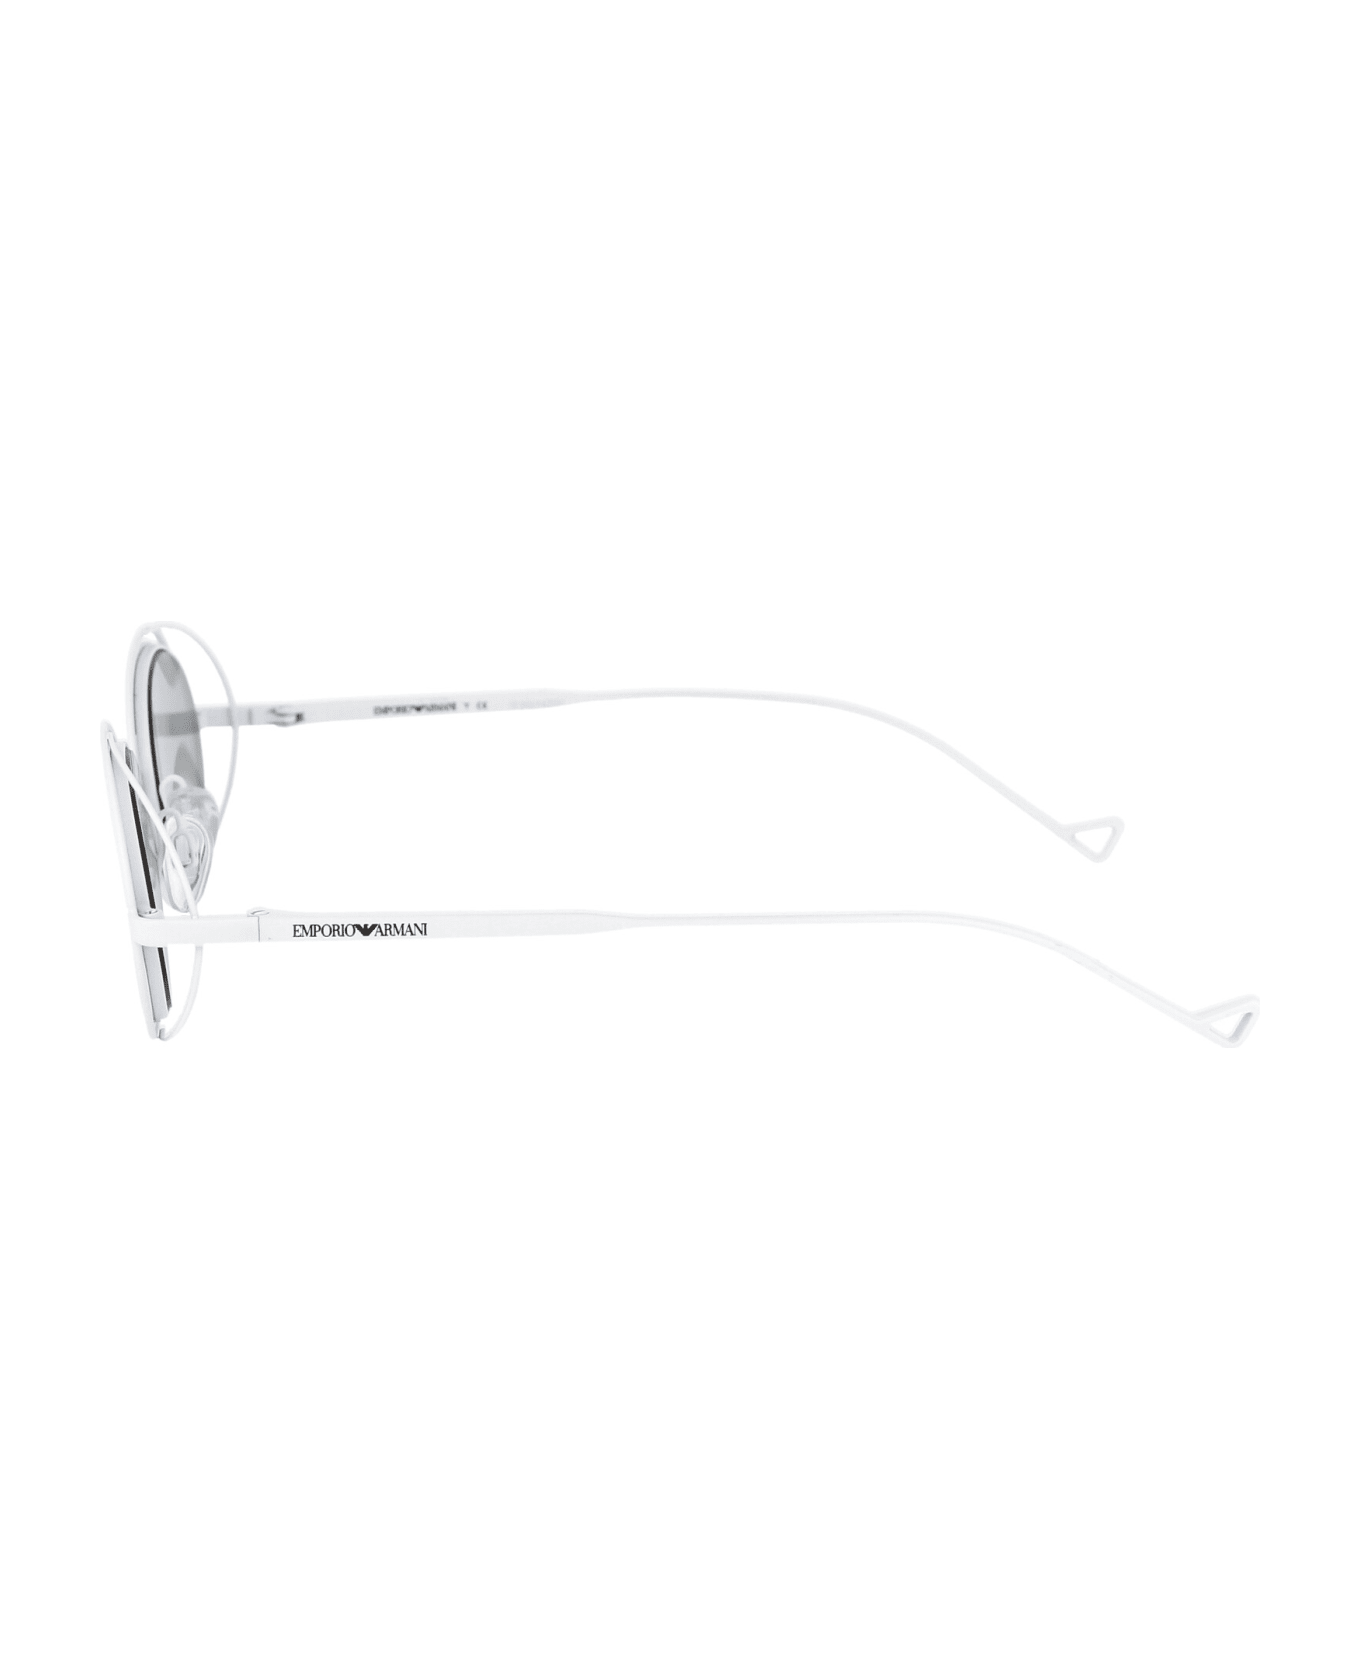 Emporio Armani 0ea2118 Sunglasses - 333387 MATTE WHITE サングラス